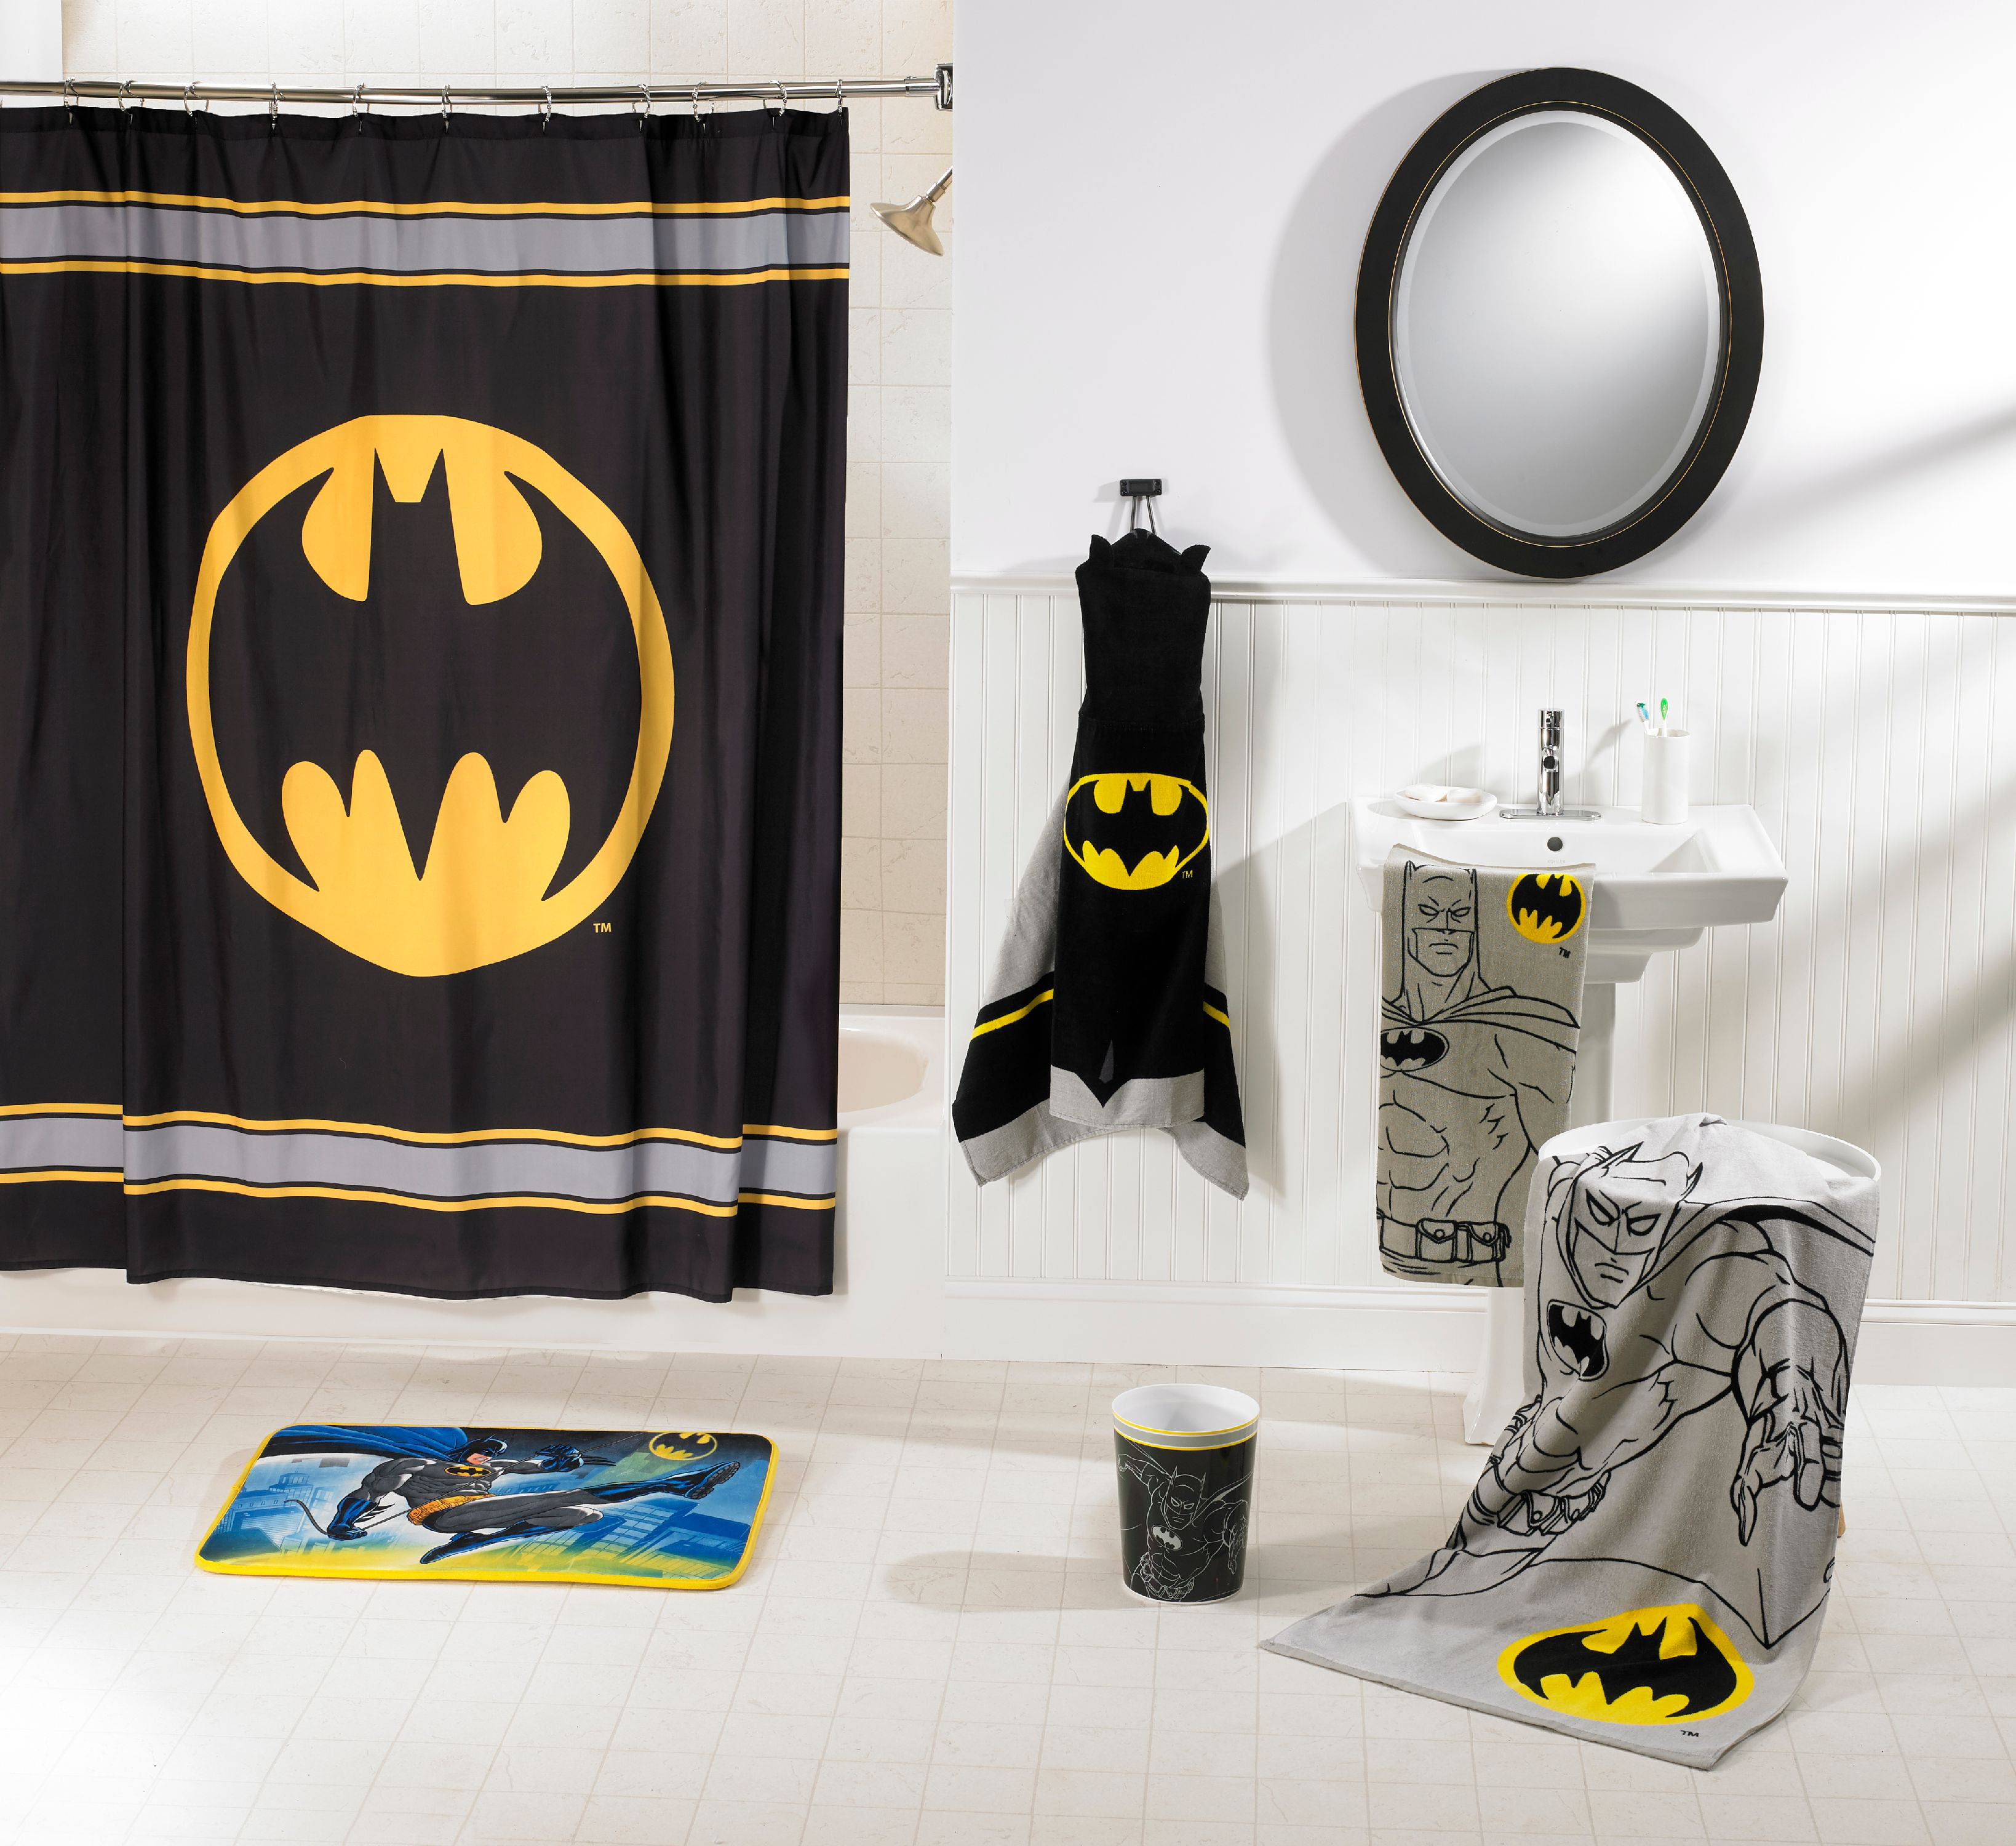 DC Comics Batman Bathroom Soap Lotin Pump Bathroom Decor